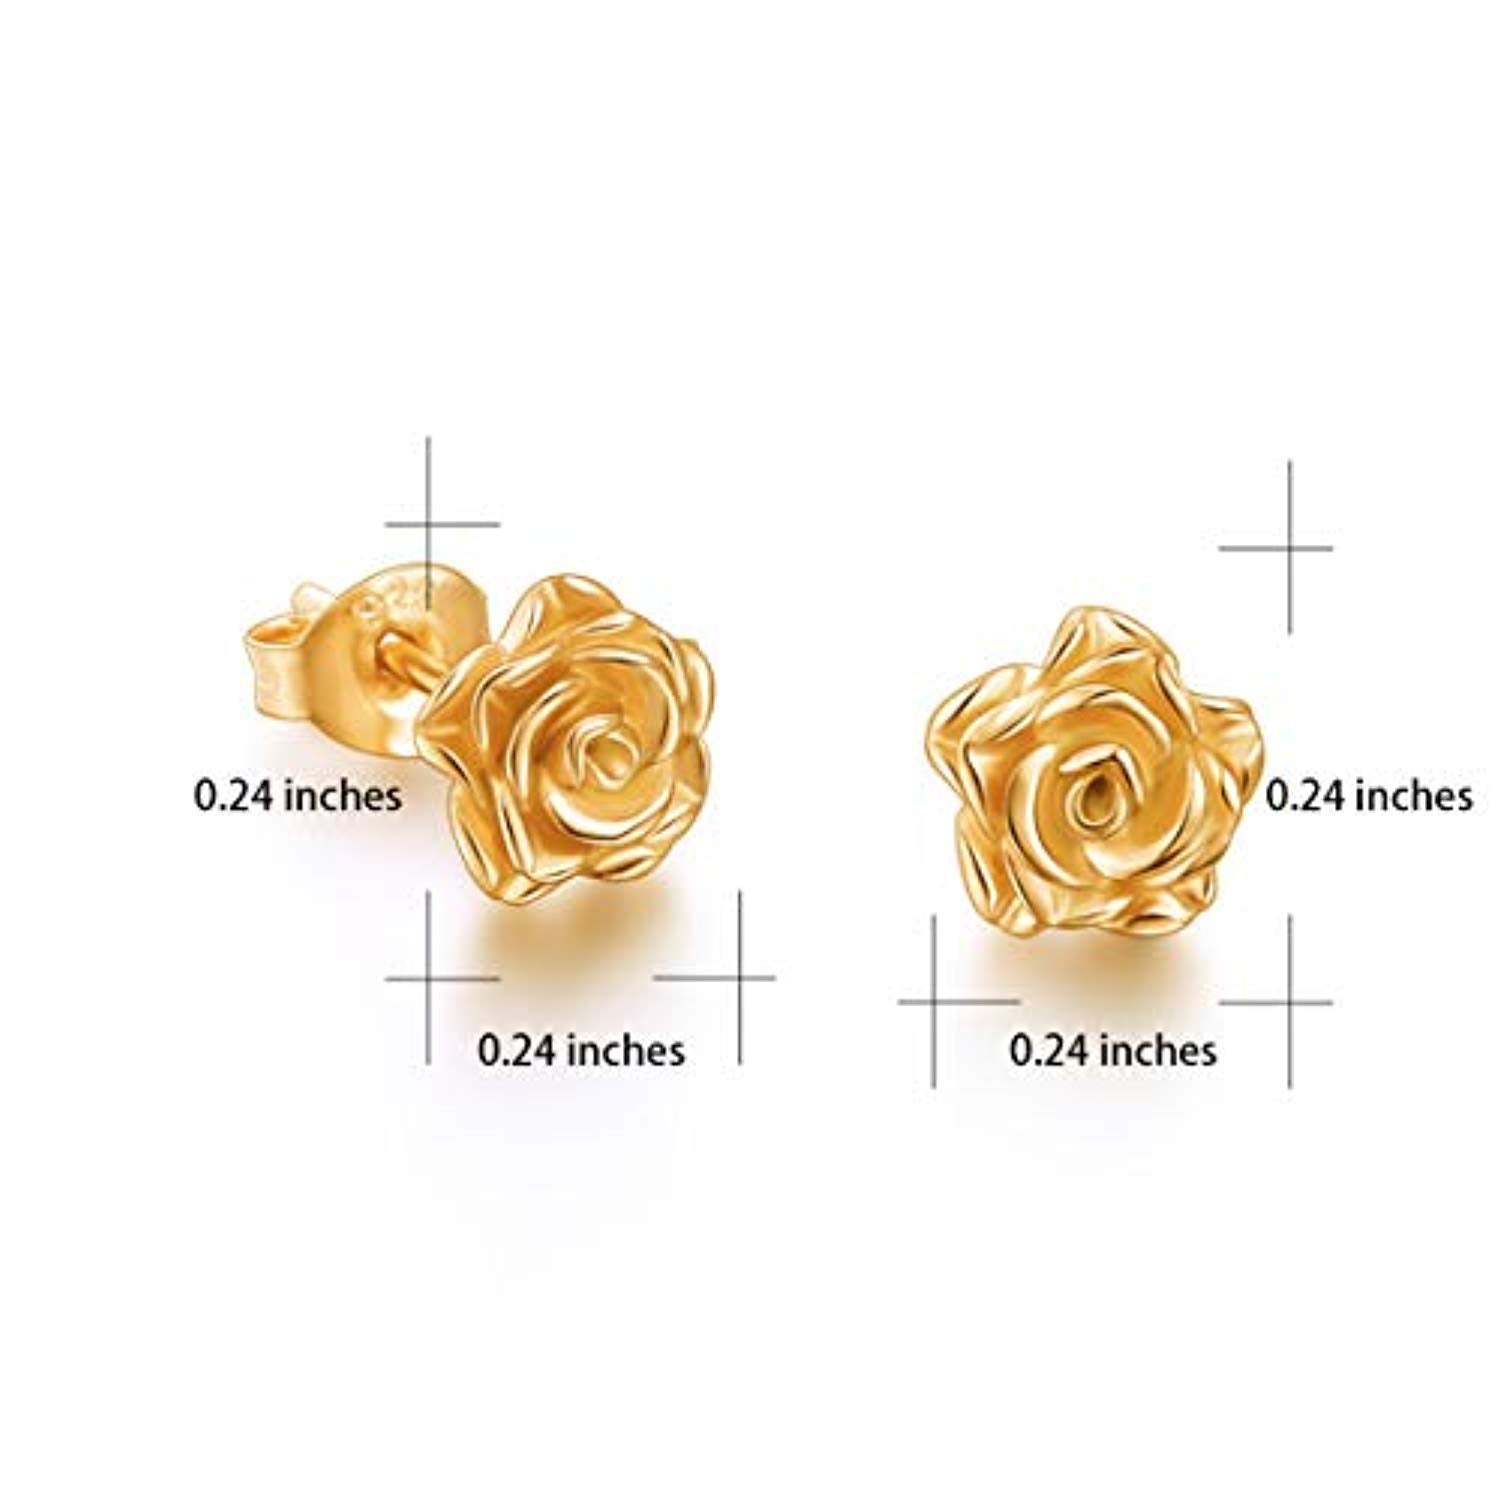 Details more than 157 rose flower design earrings best